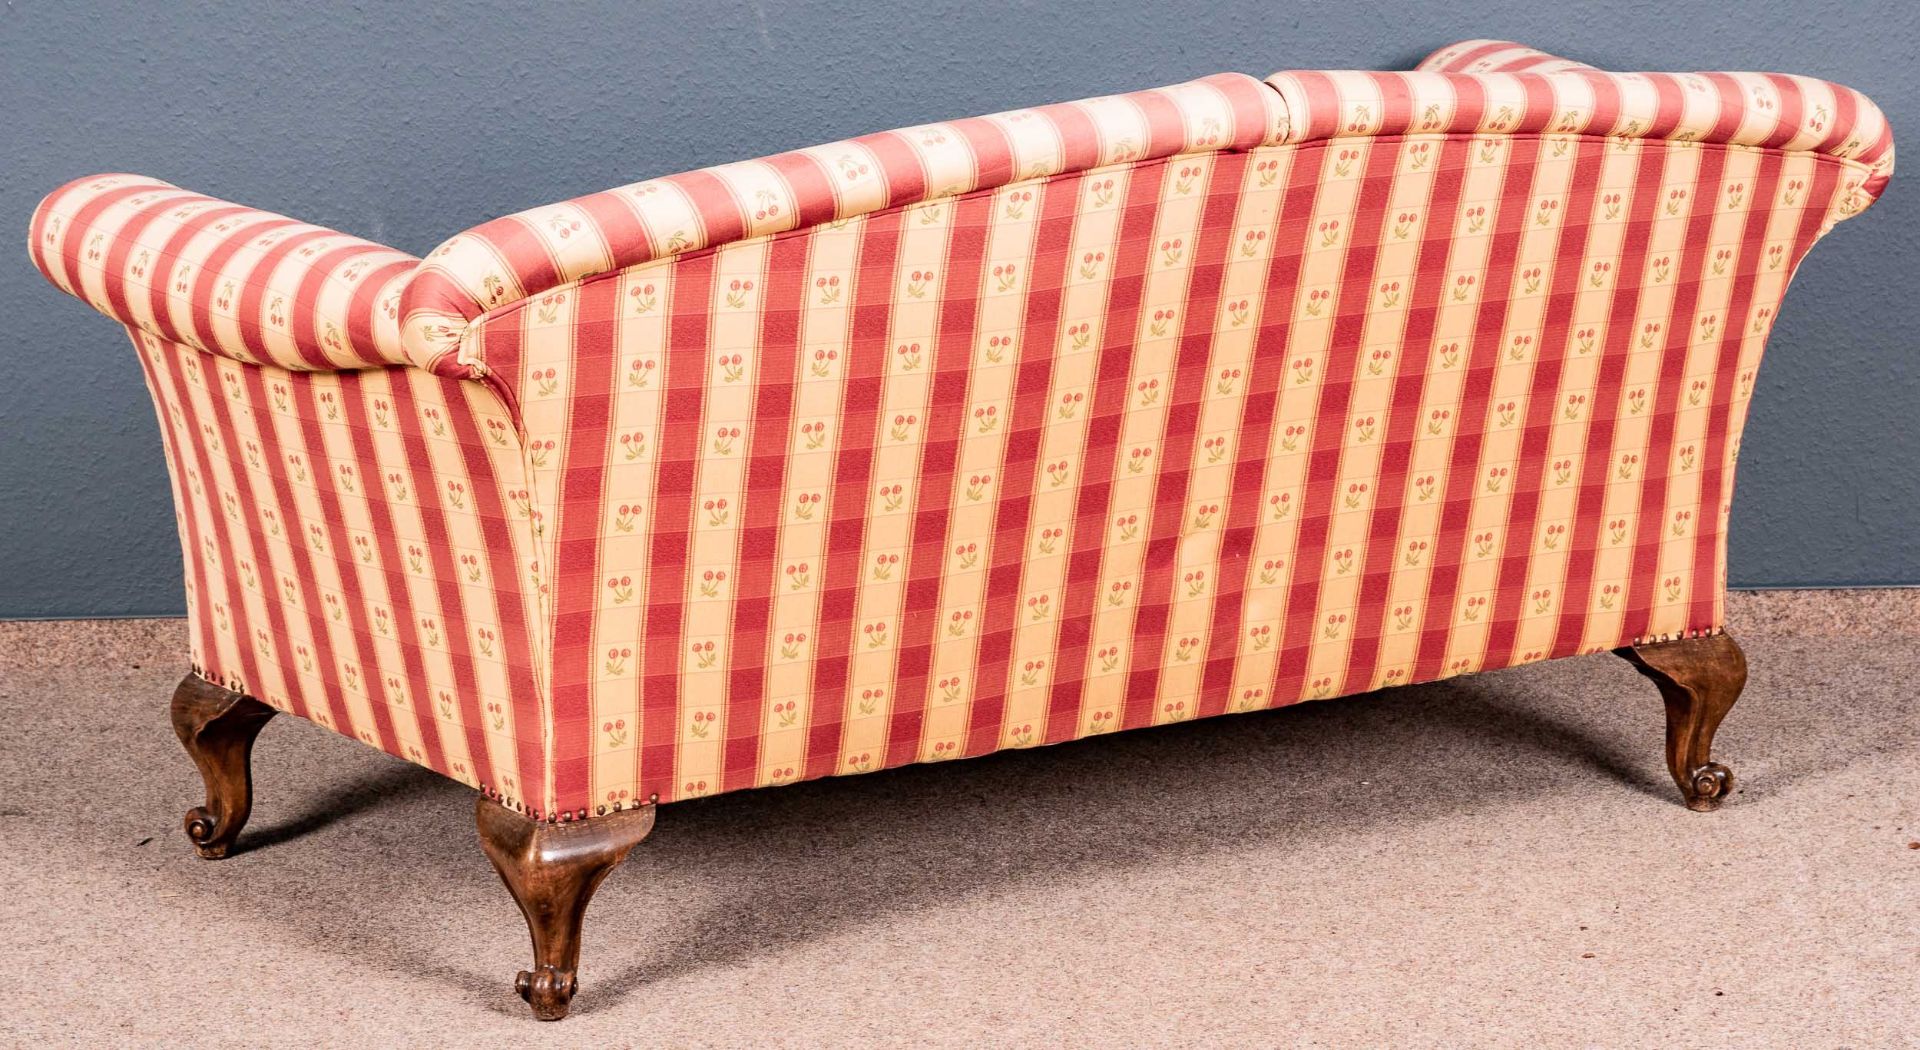 Englisches Sofa/Couch; freistehend gearbeitetes, 2sitziges Sofa mit gebogenen Lehnen, losen Sitzkis - Bild 3 aus 3